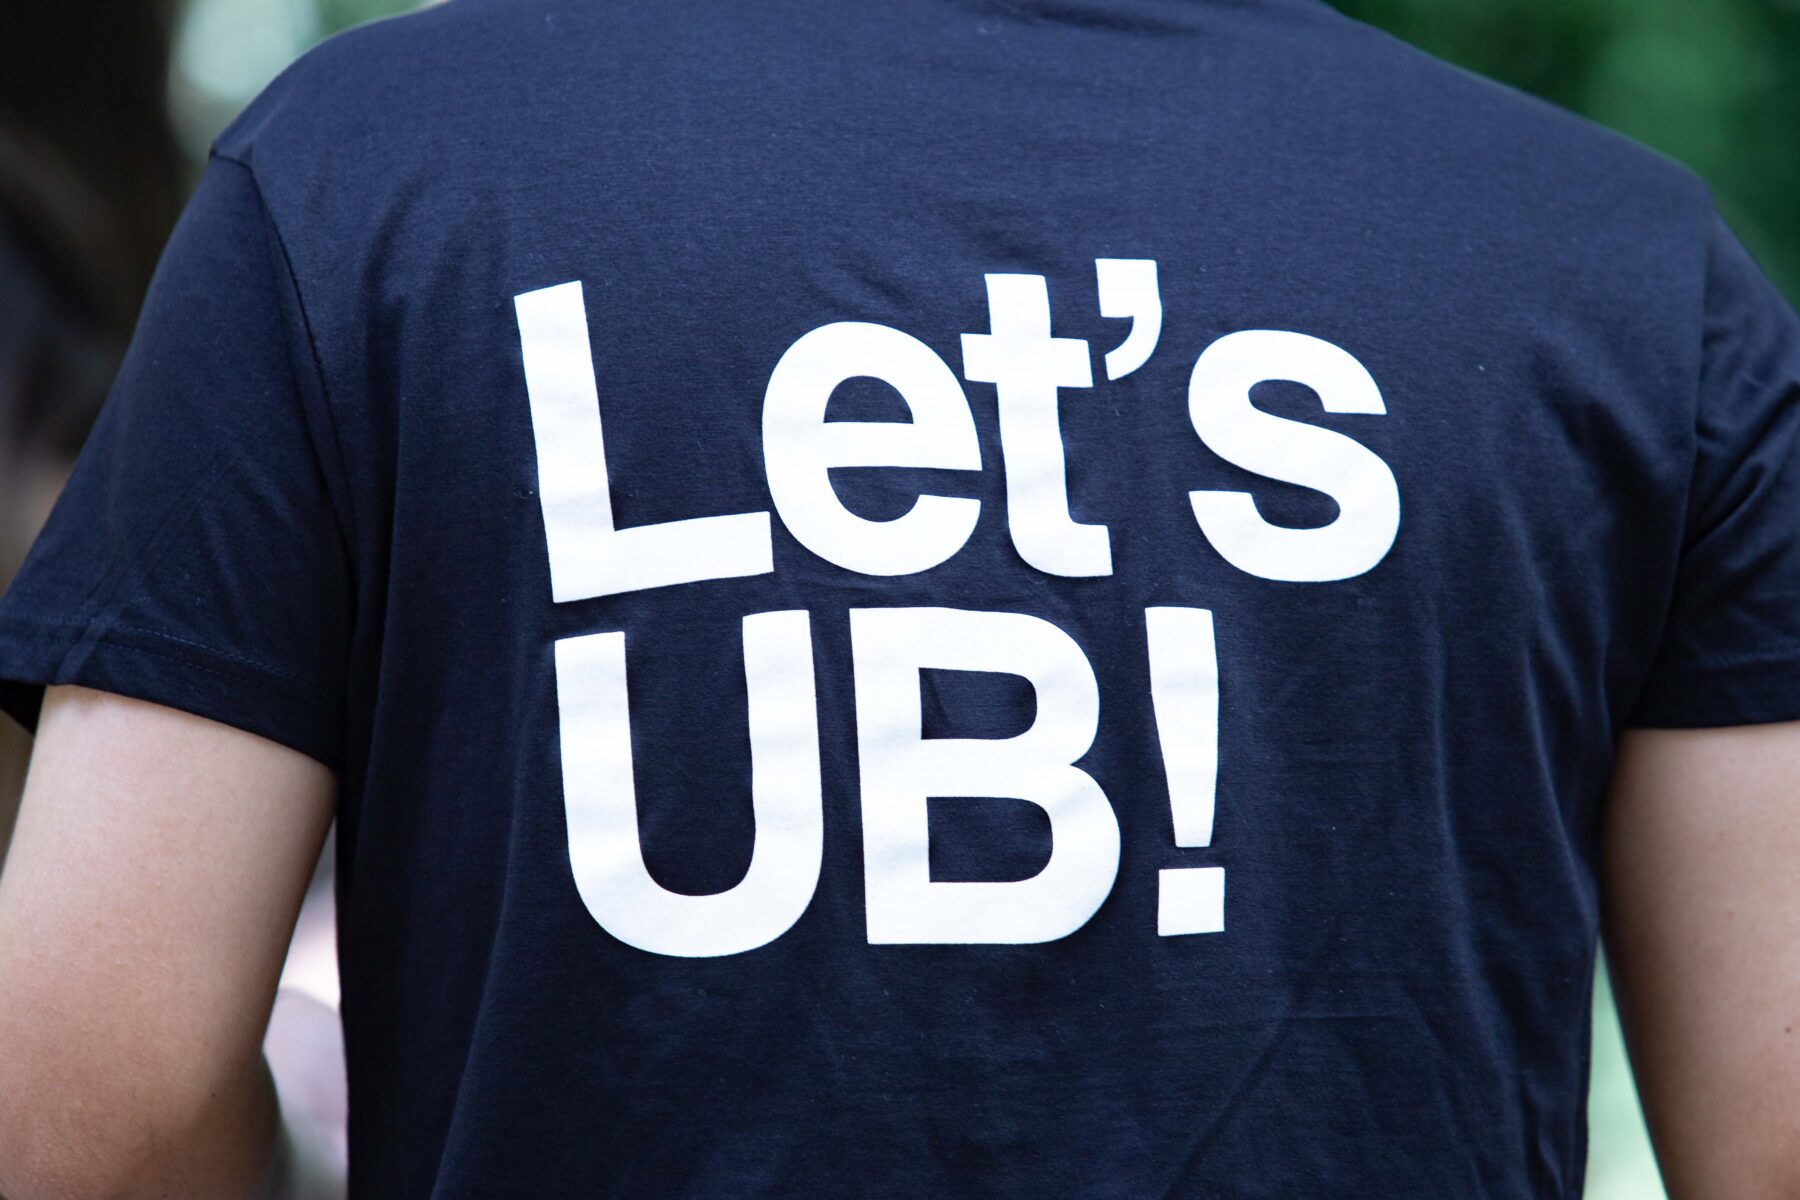 StartUB! organitza la jornada Let’s UB! per a fomentar la innovació i l’emprenedoria